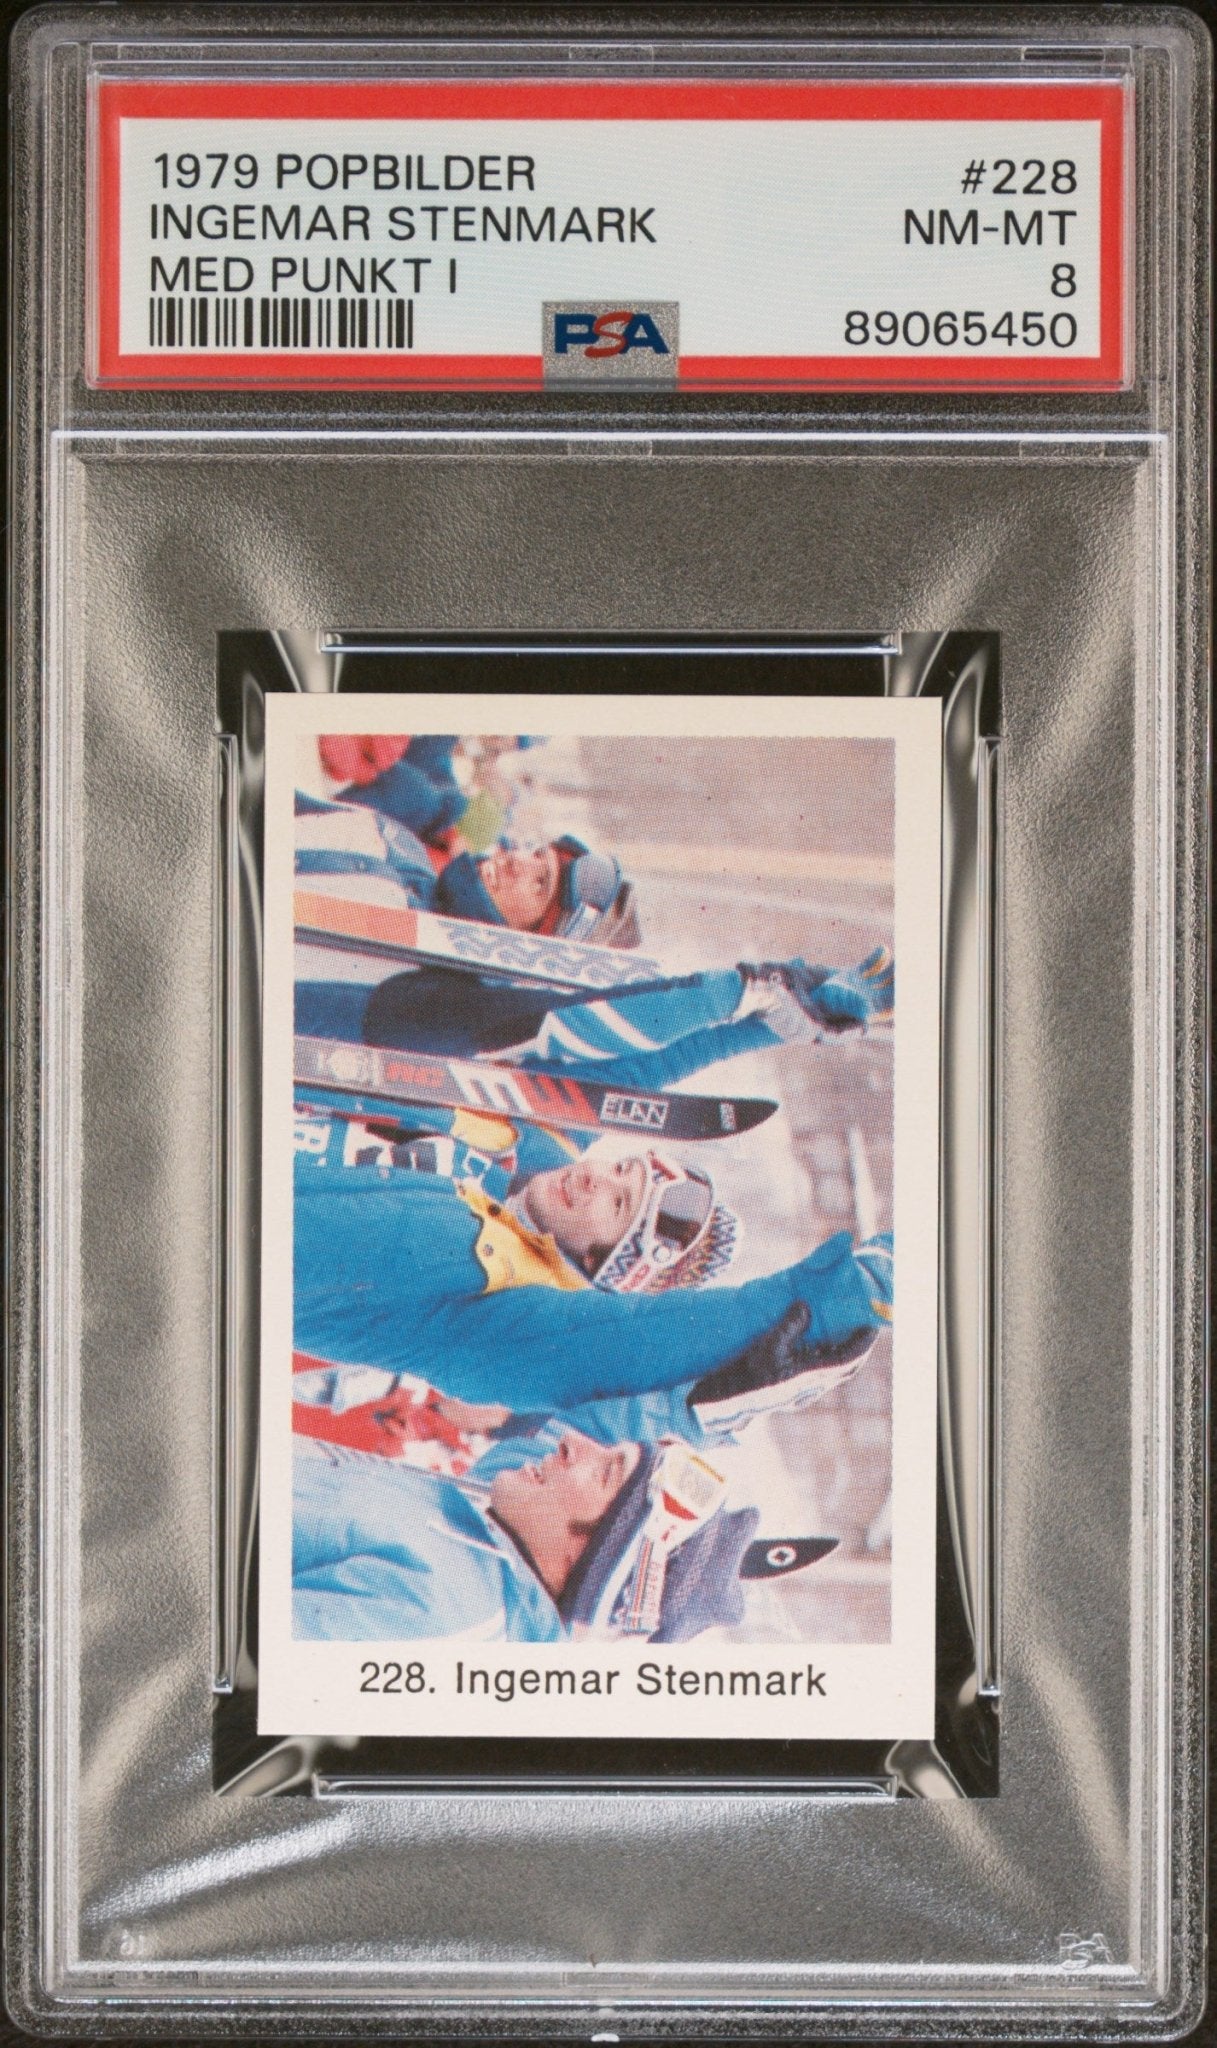 INGEMAR STENMARK PSA 8 1979 Popbilder Med Punkt IV Olympics Ski Racer #228 Misc - Sports Base Graded Cards - Hobby Gems